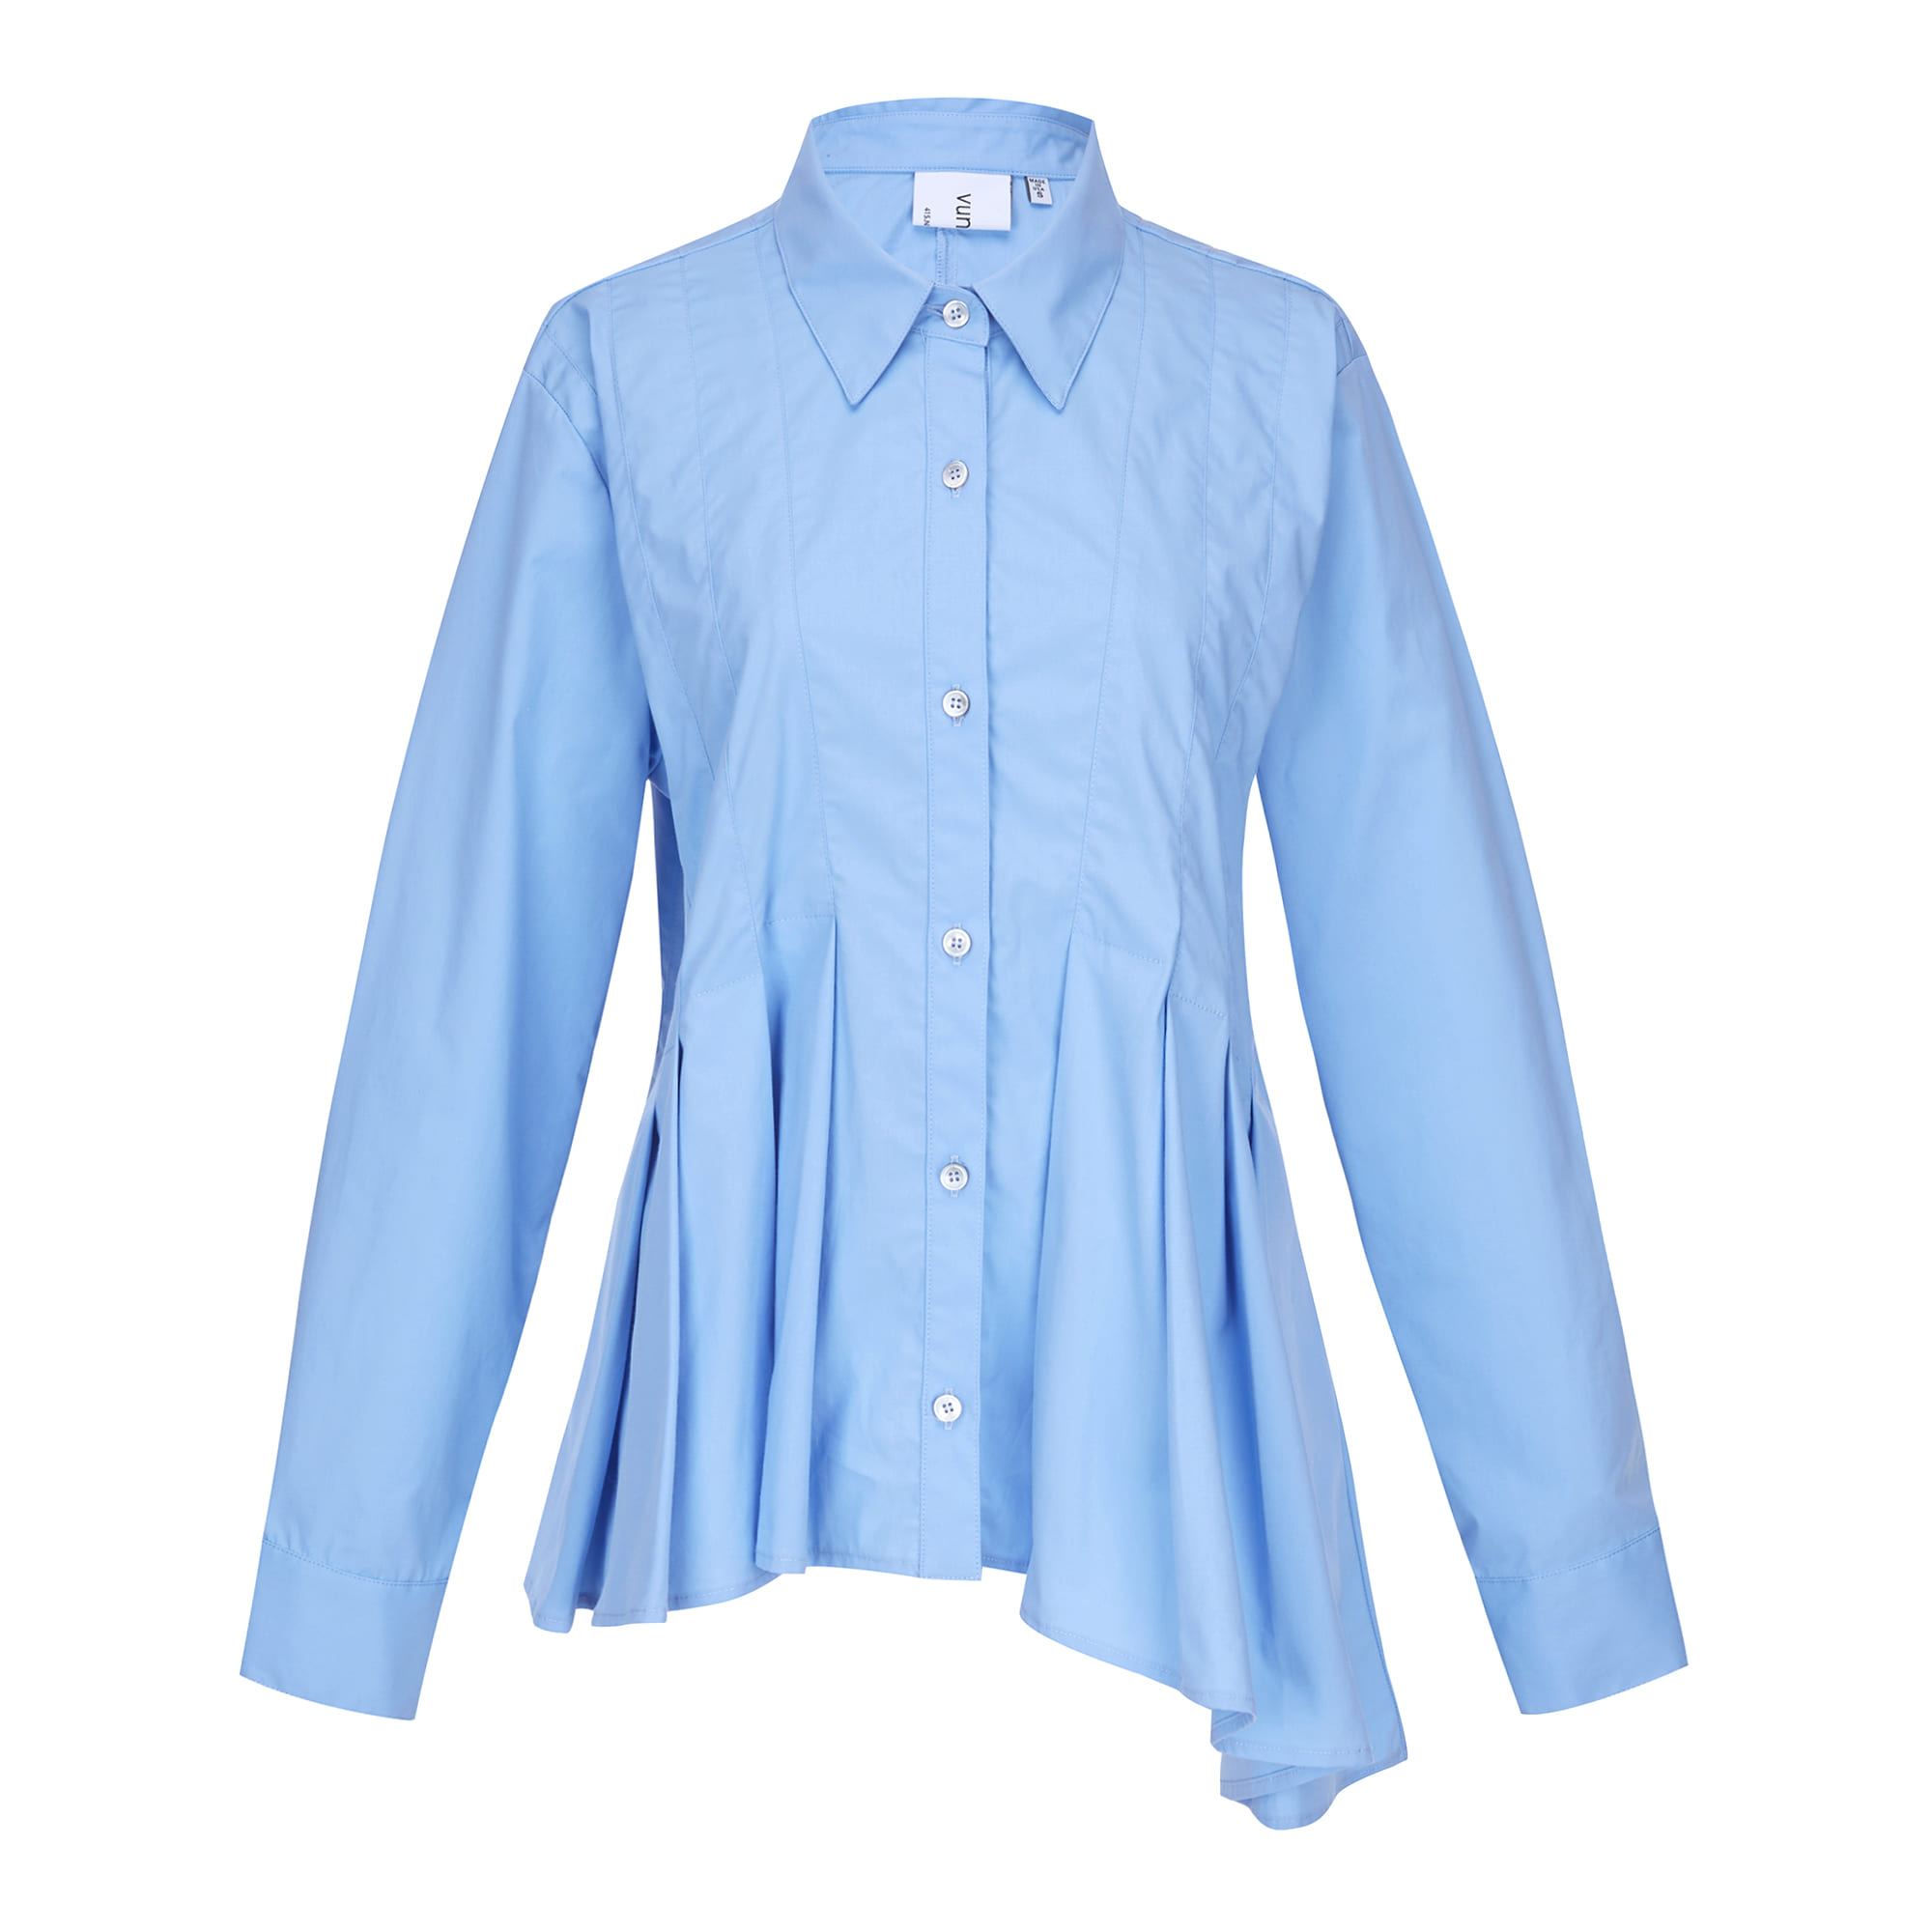 [아울렛] Ola pleats shirt (올라 플리츠 셔츠) Sky blue